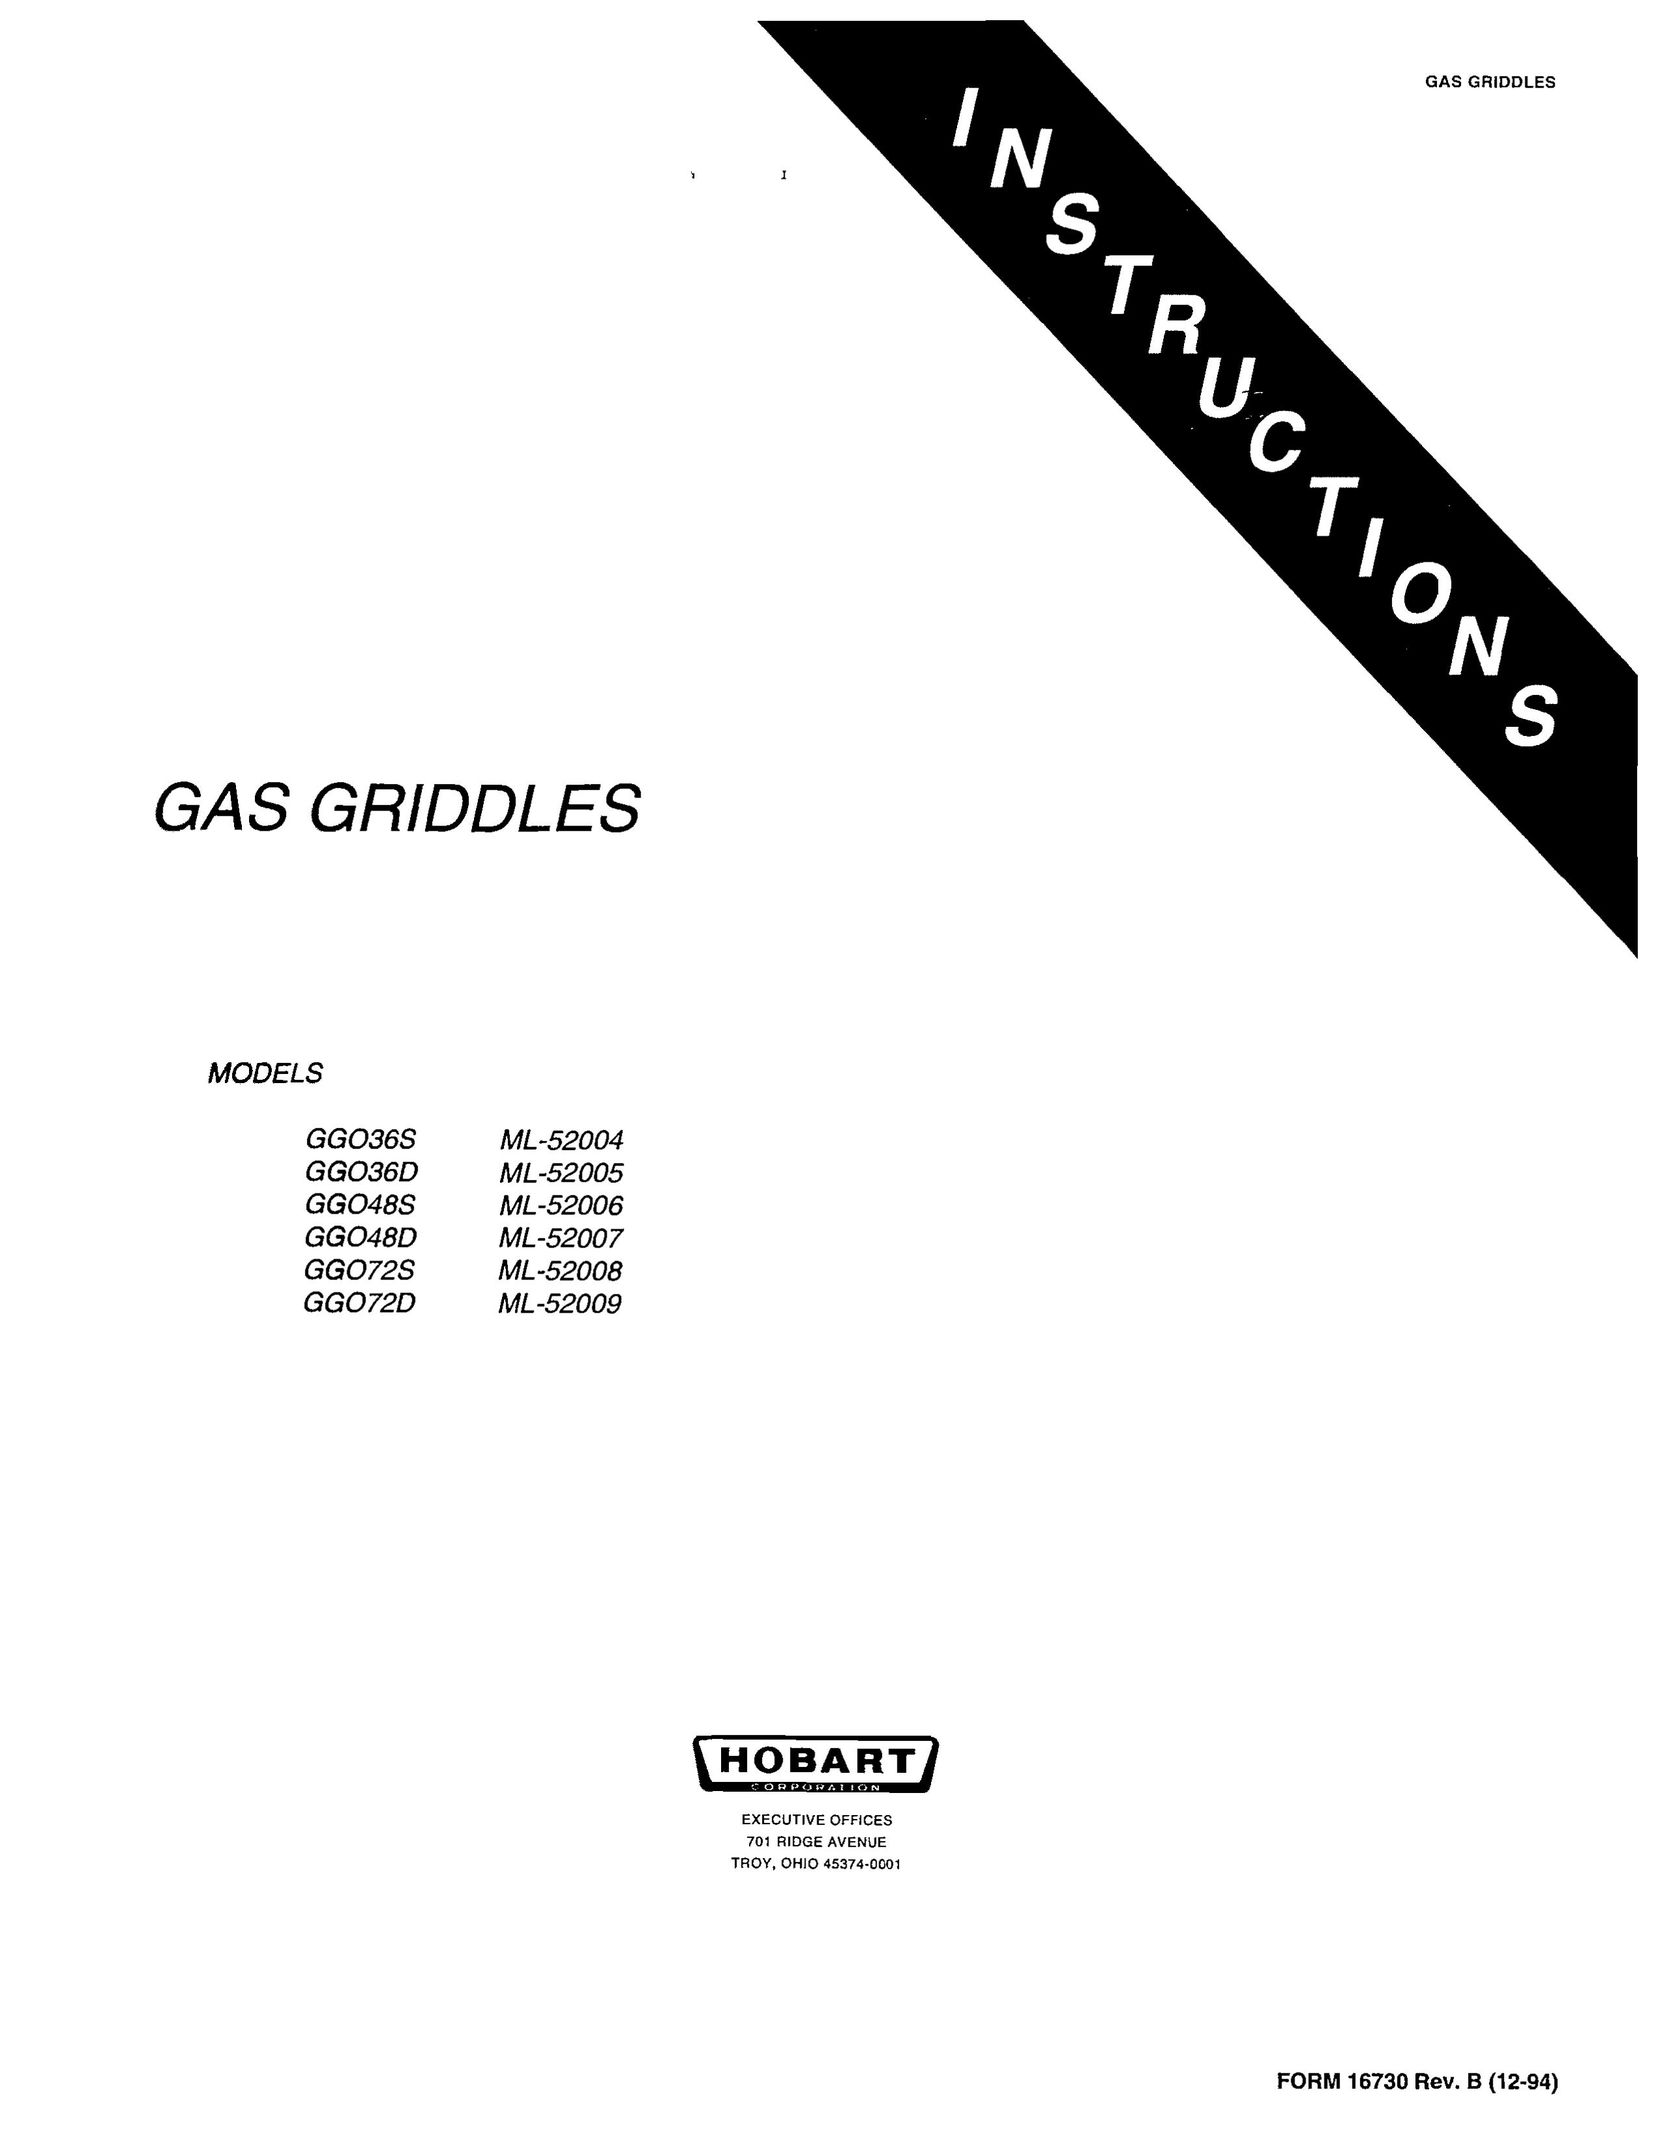 Hobart GGO72S Griddle User Manual